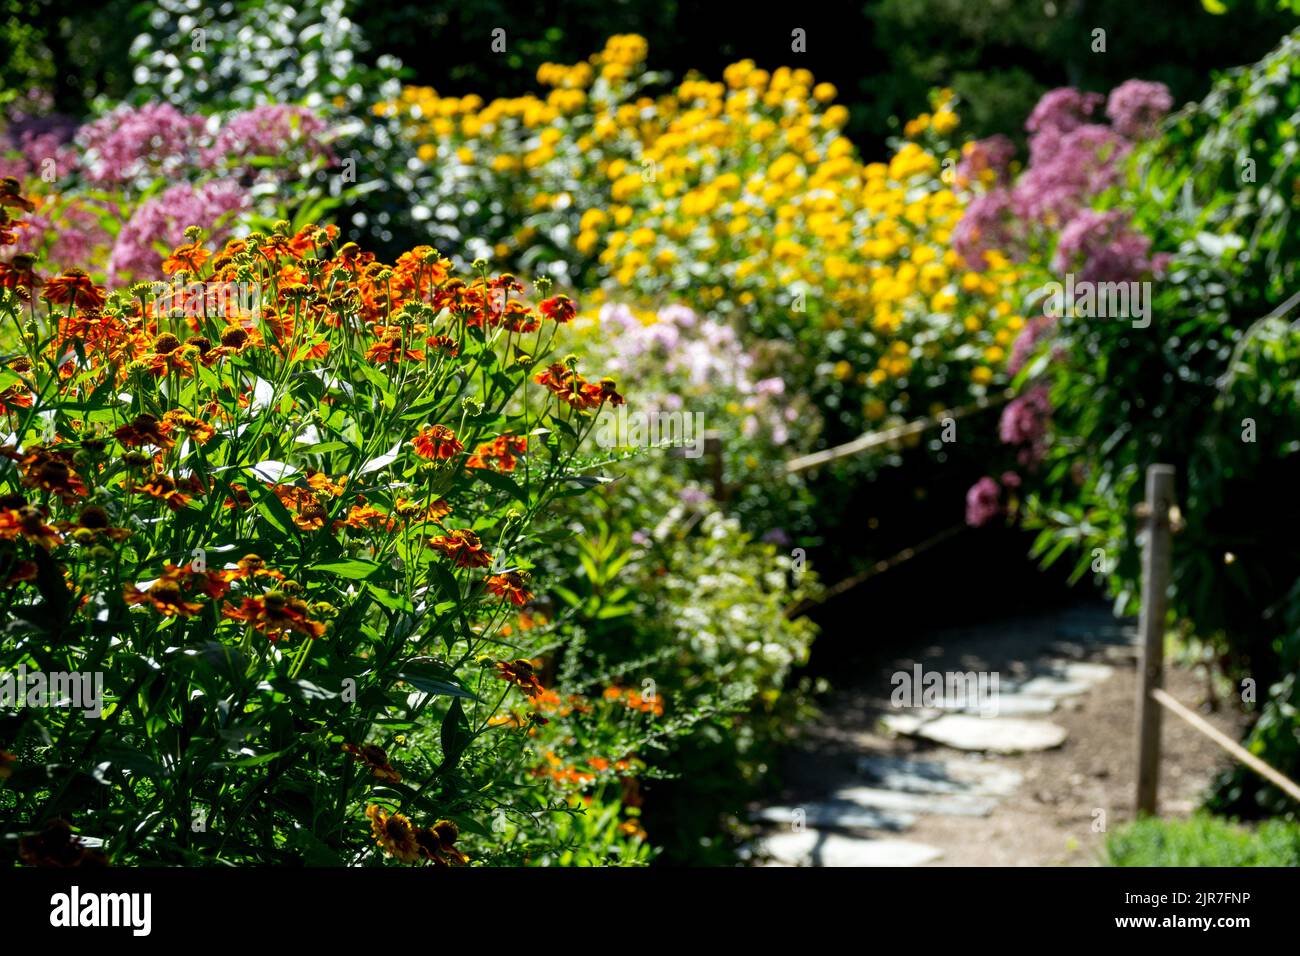 Percorso in colorato Overgrown ma curato giardino Estate giardino Perennial confine Helenium Falso girasole Joe Pye Weed arancione giallo viola fiori Foto Stock